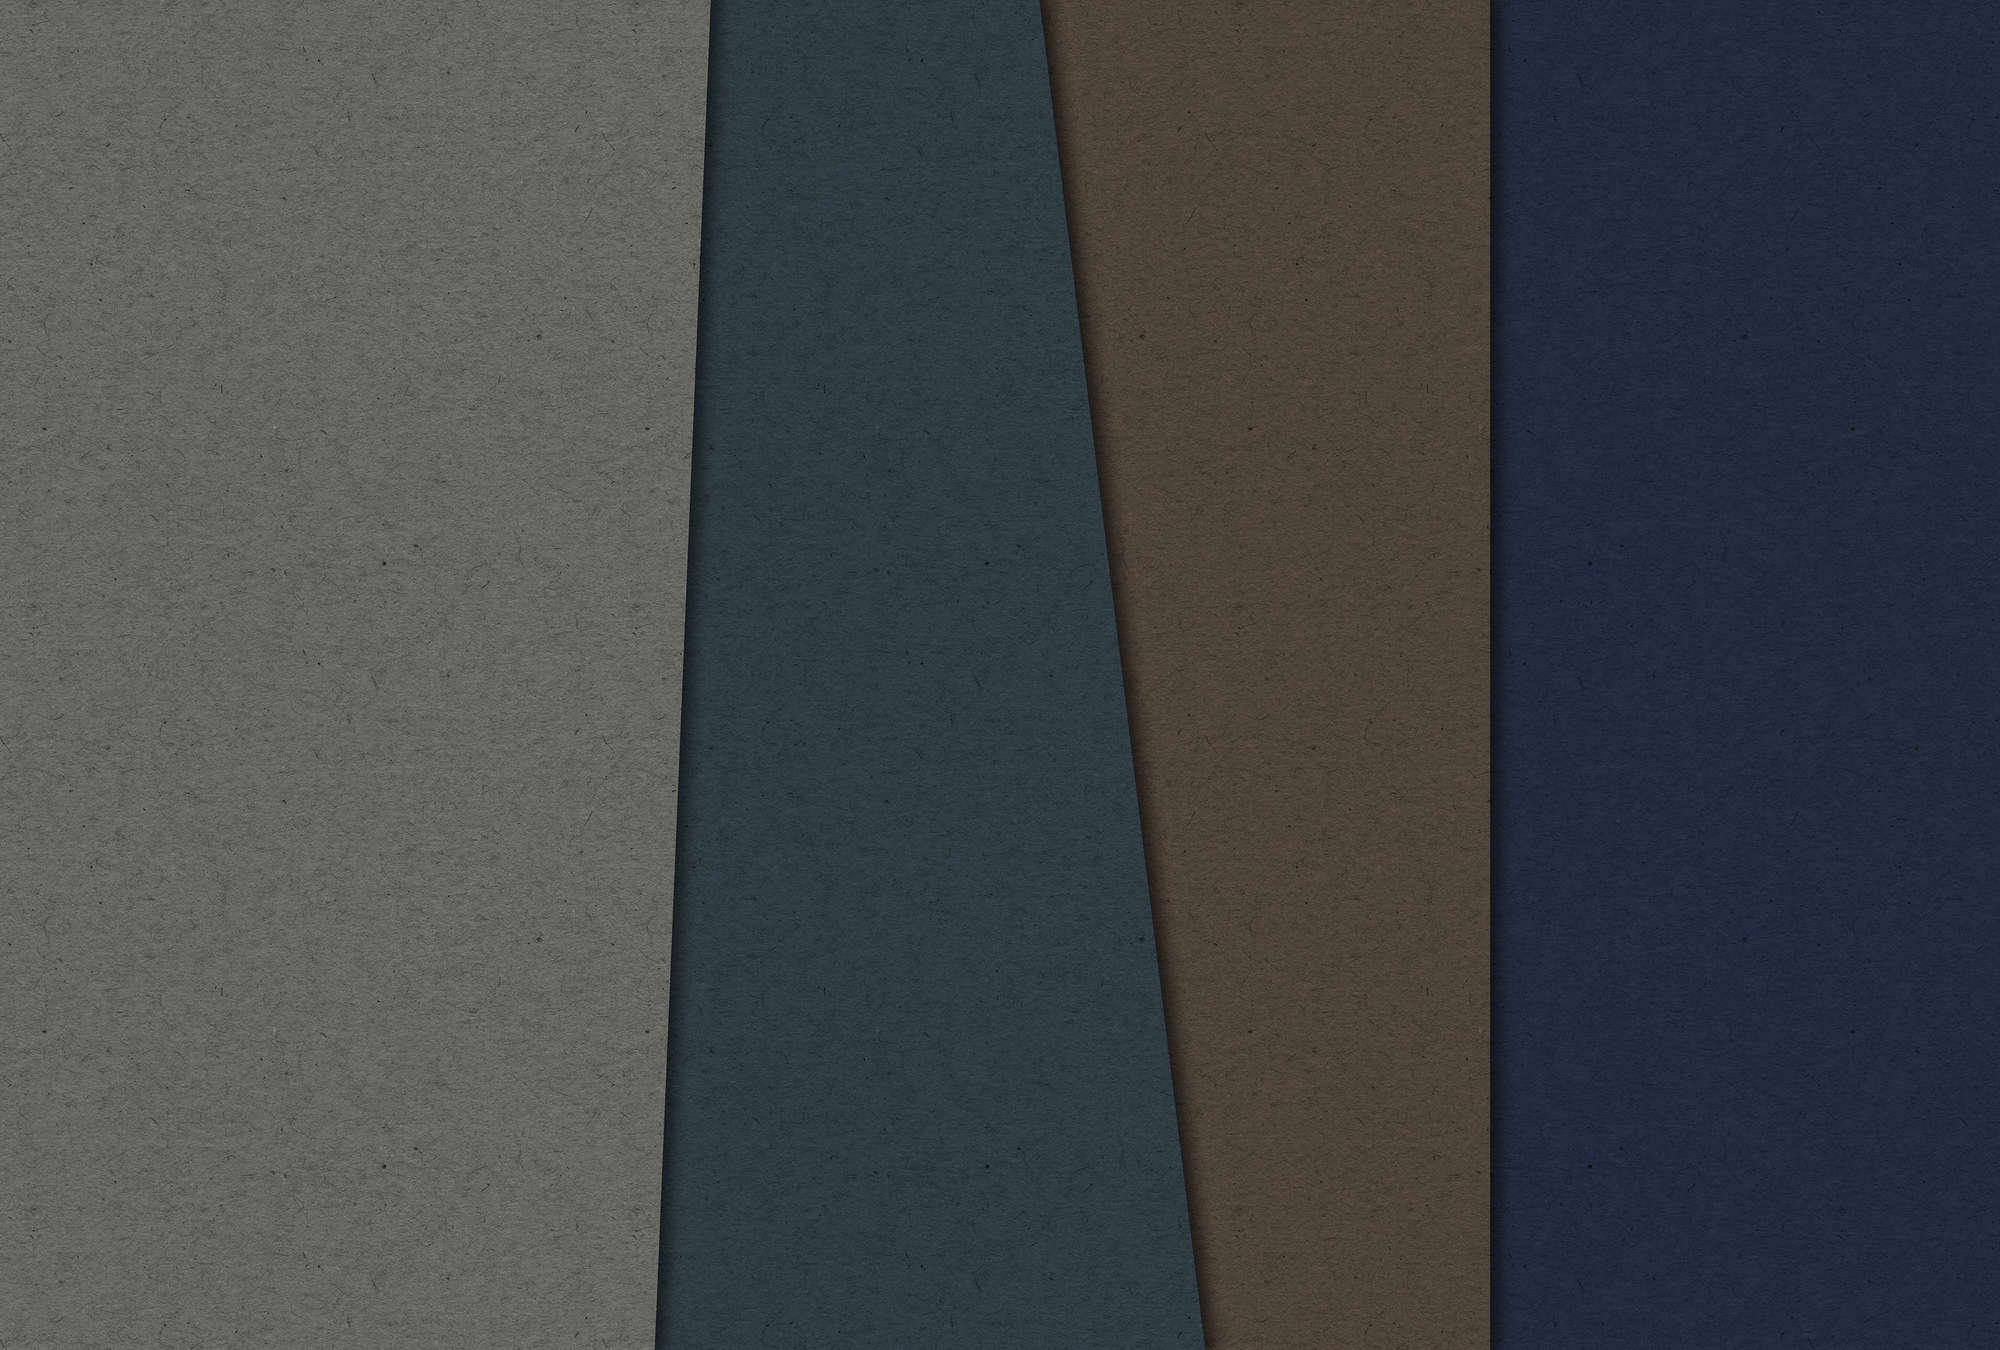             Layered Cardboard 2 - Fototapete in Pappe Struktur mit dunklen Farbfeldern – Blau, Braun | Perlmutt Glattvlies
        